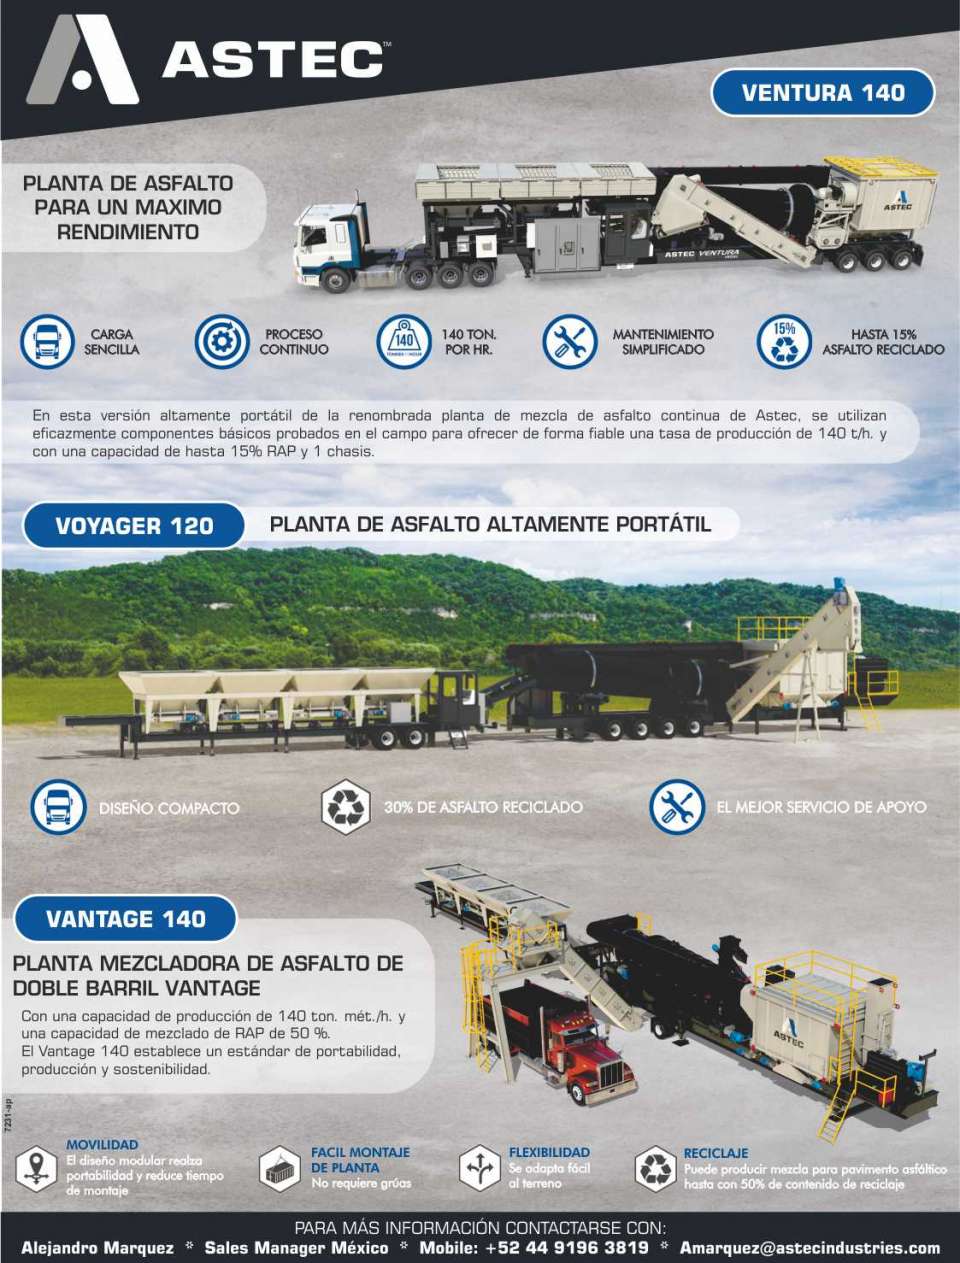 ASTEC fabrica plantas de asfalto para un maximo rendimiento y altamente portatiles